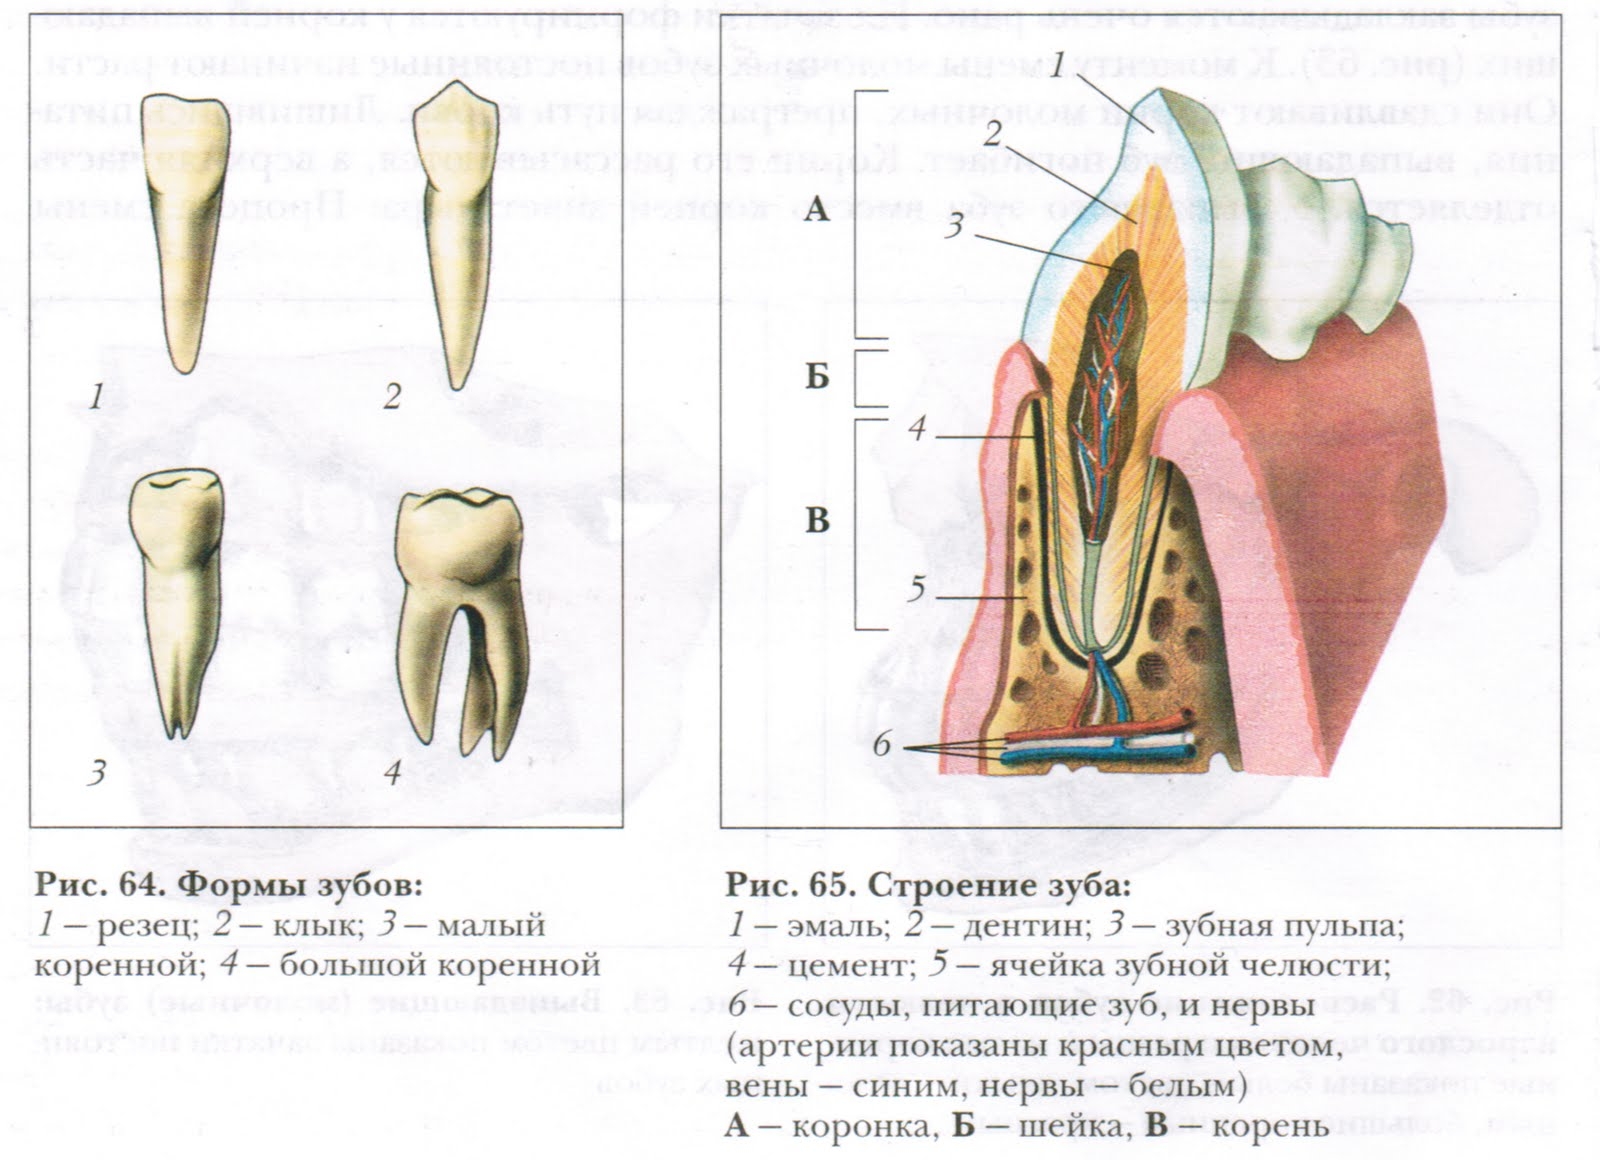 В какую систему входит зуб. Строение зуба анатомия 8-. Строение зуба рисунок биология. Внешнее строение зуба биология. Зуб клык у человека строение.